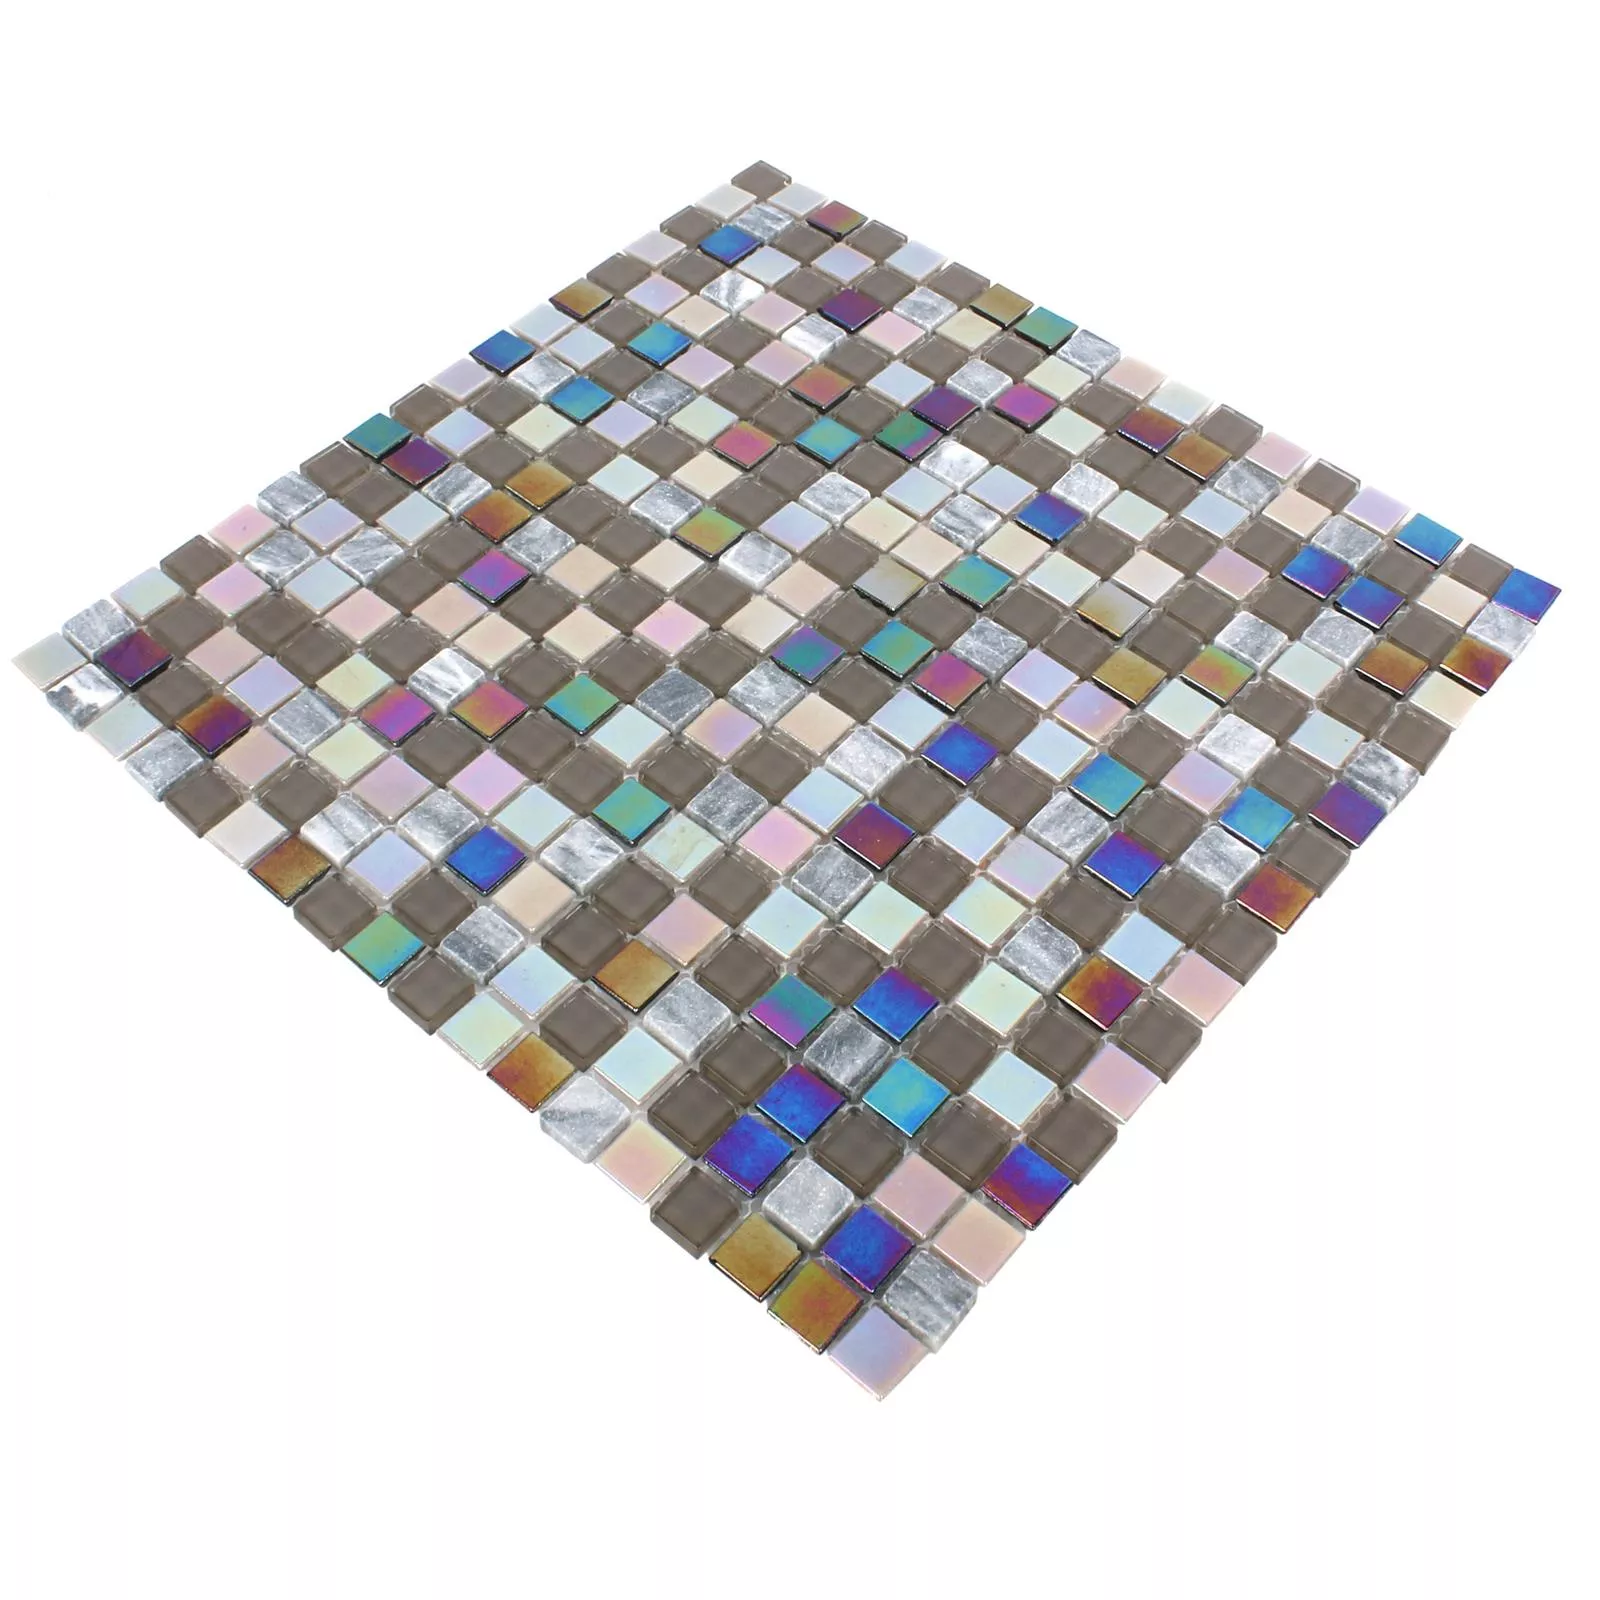 Muster von Mosaikfliesen Tallinn Marmor Glas Perlmutt Grau Braun